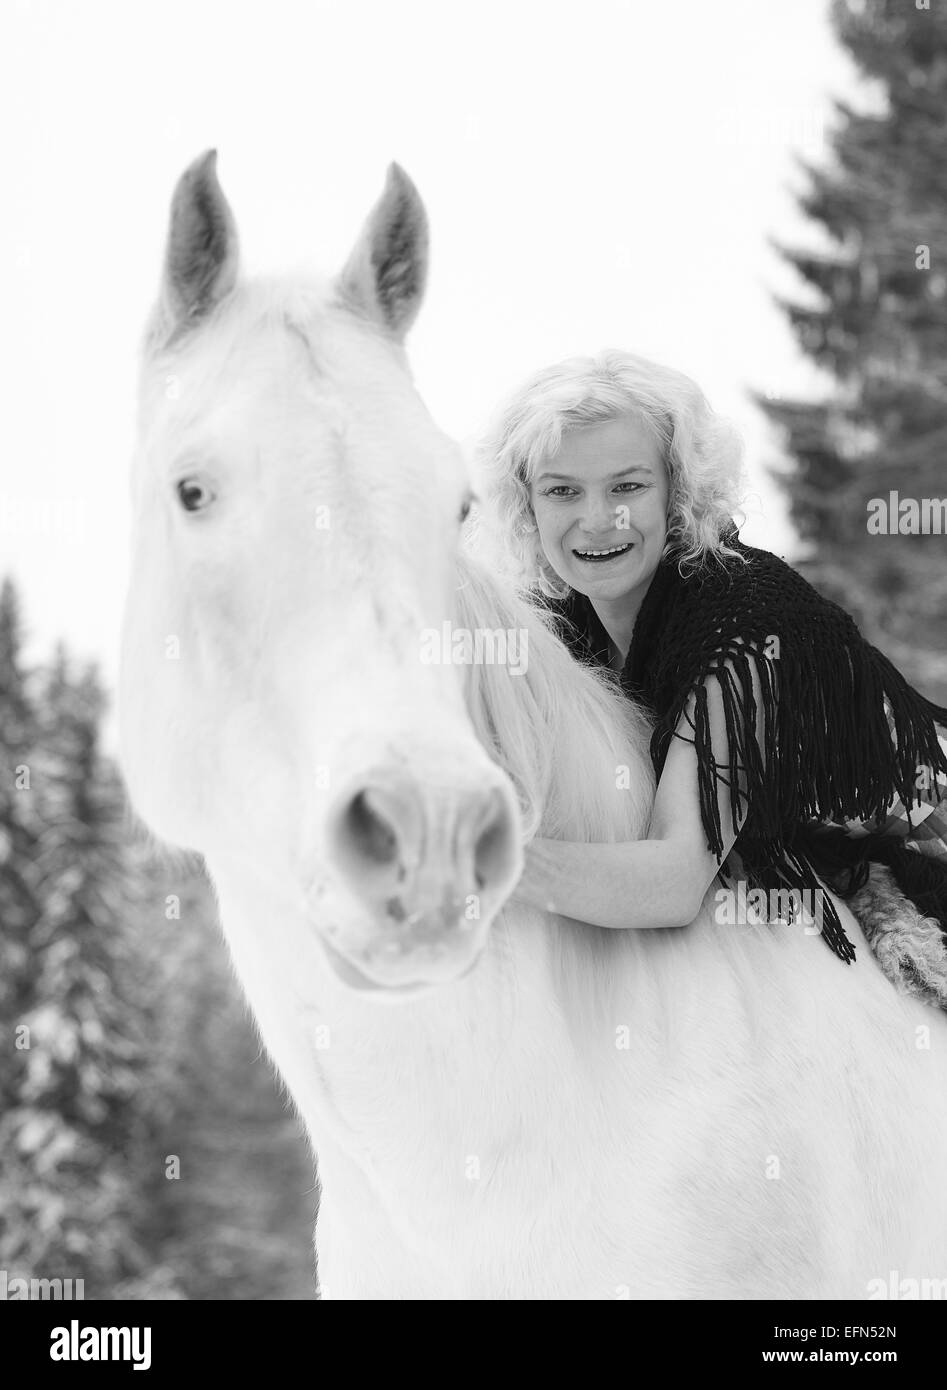 Jolie femme blonde embrasse un cheval blanc, ciel couvert journée d'hiver Banque D'Images